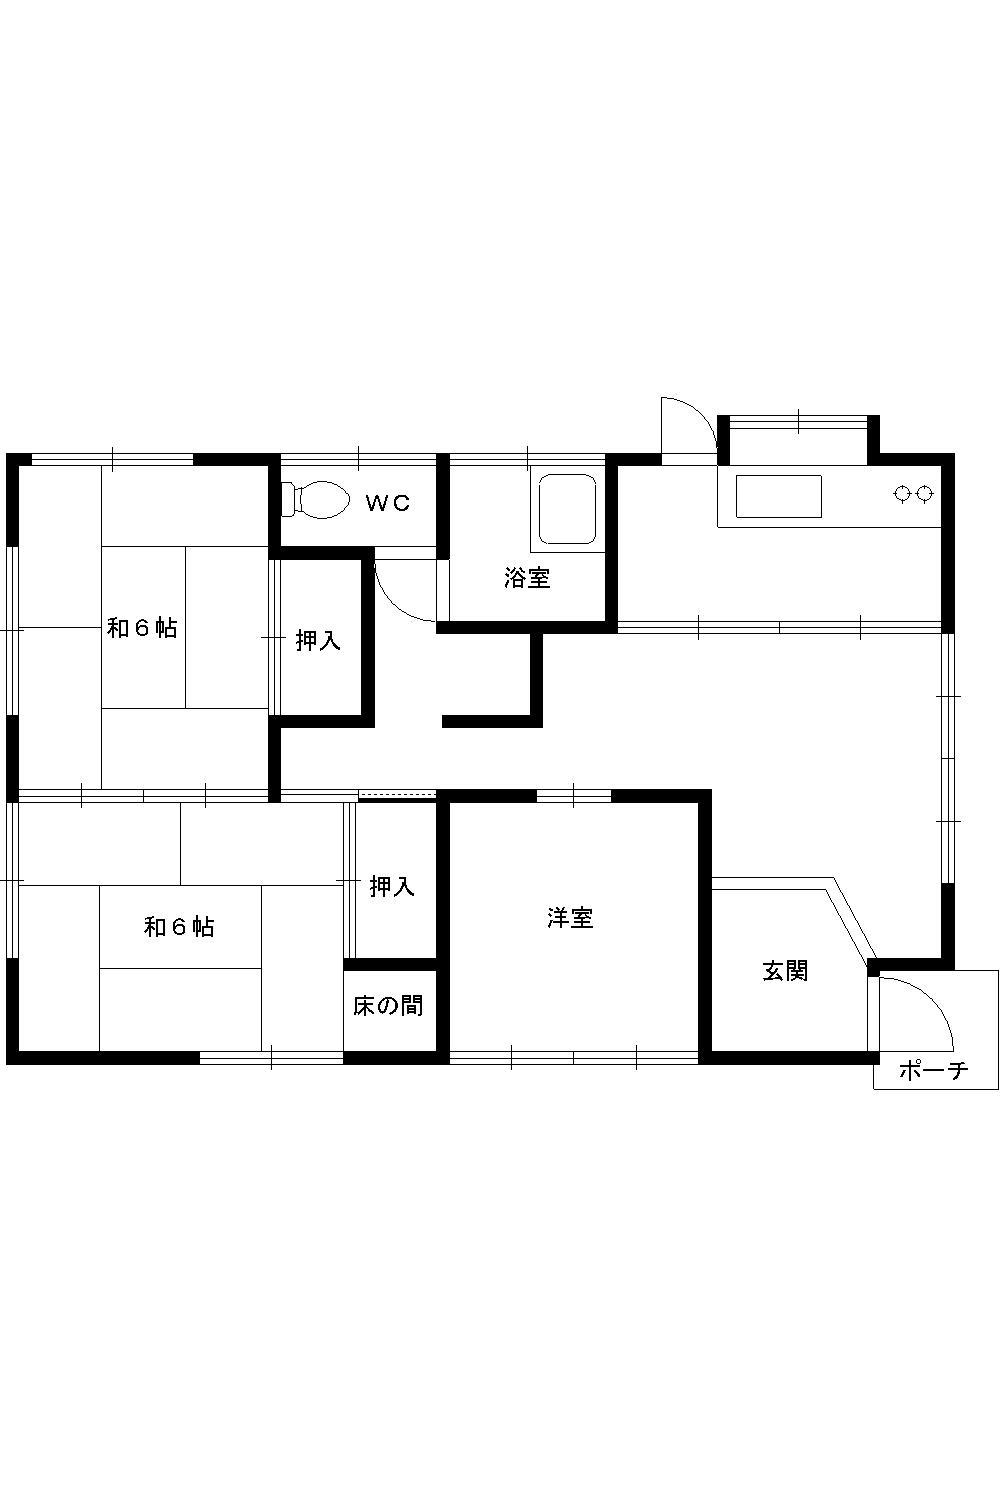 Floor plan. 13.8 million yen, 3DK, Land area 165 sq m , Building area 62.93 sq m